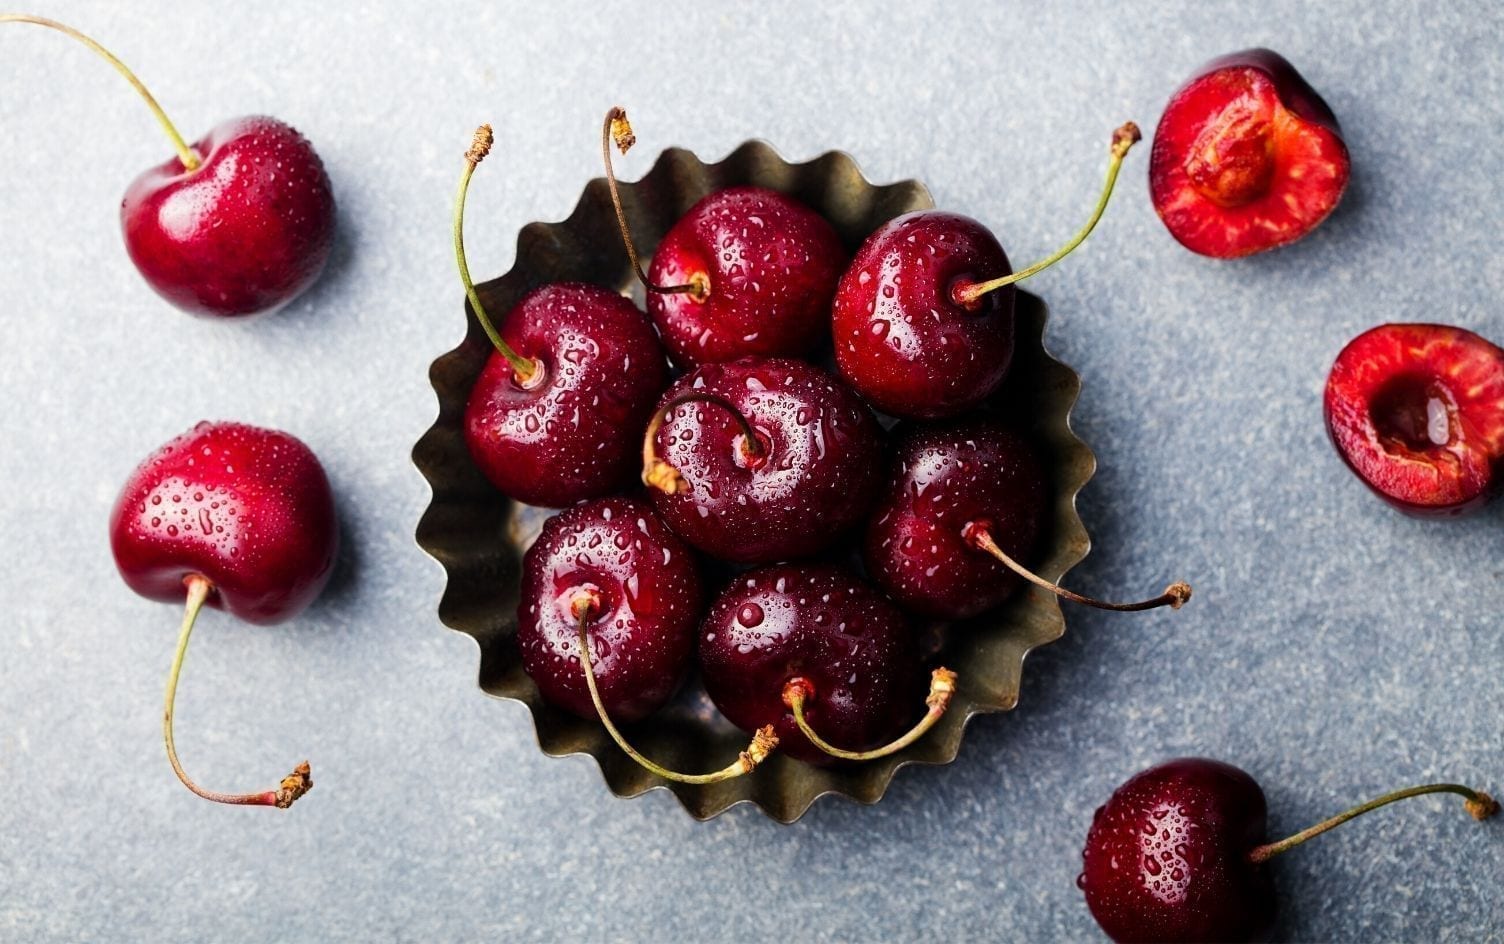 Ρευματοειδής αρθρίτιδα διατροφή: Τα καλύτερα καλοκαιρινά φρούτα για τη ρευματοειδή αρθρίτιδα